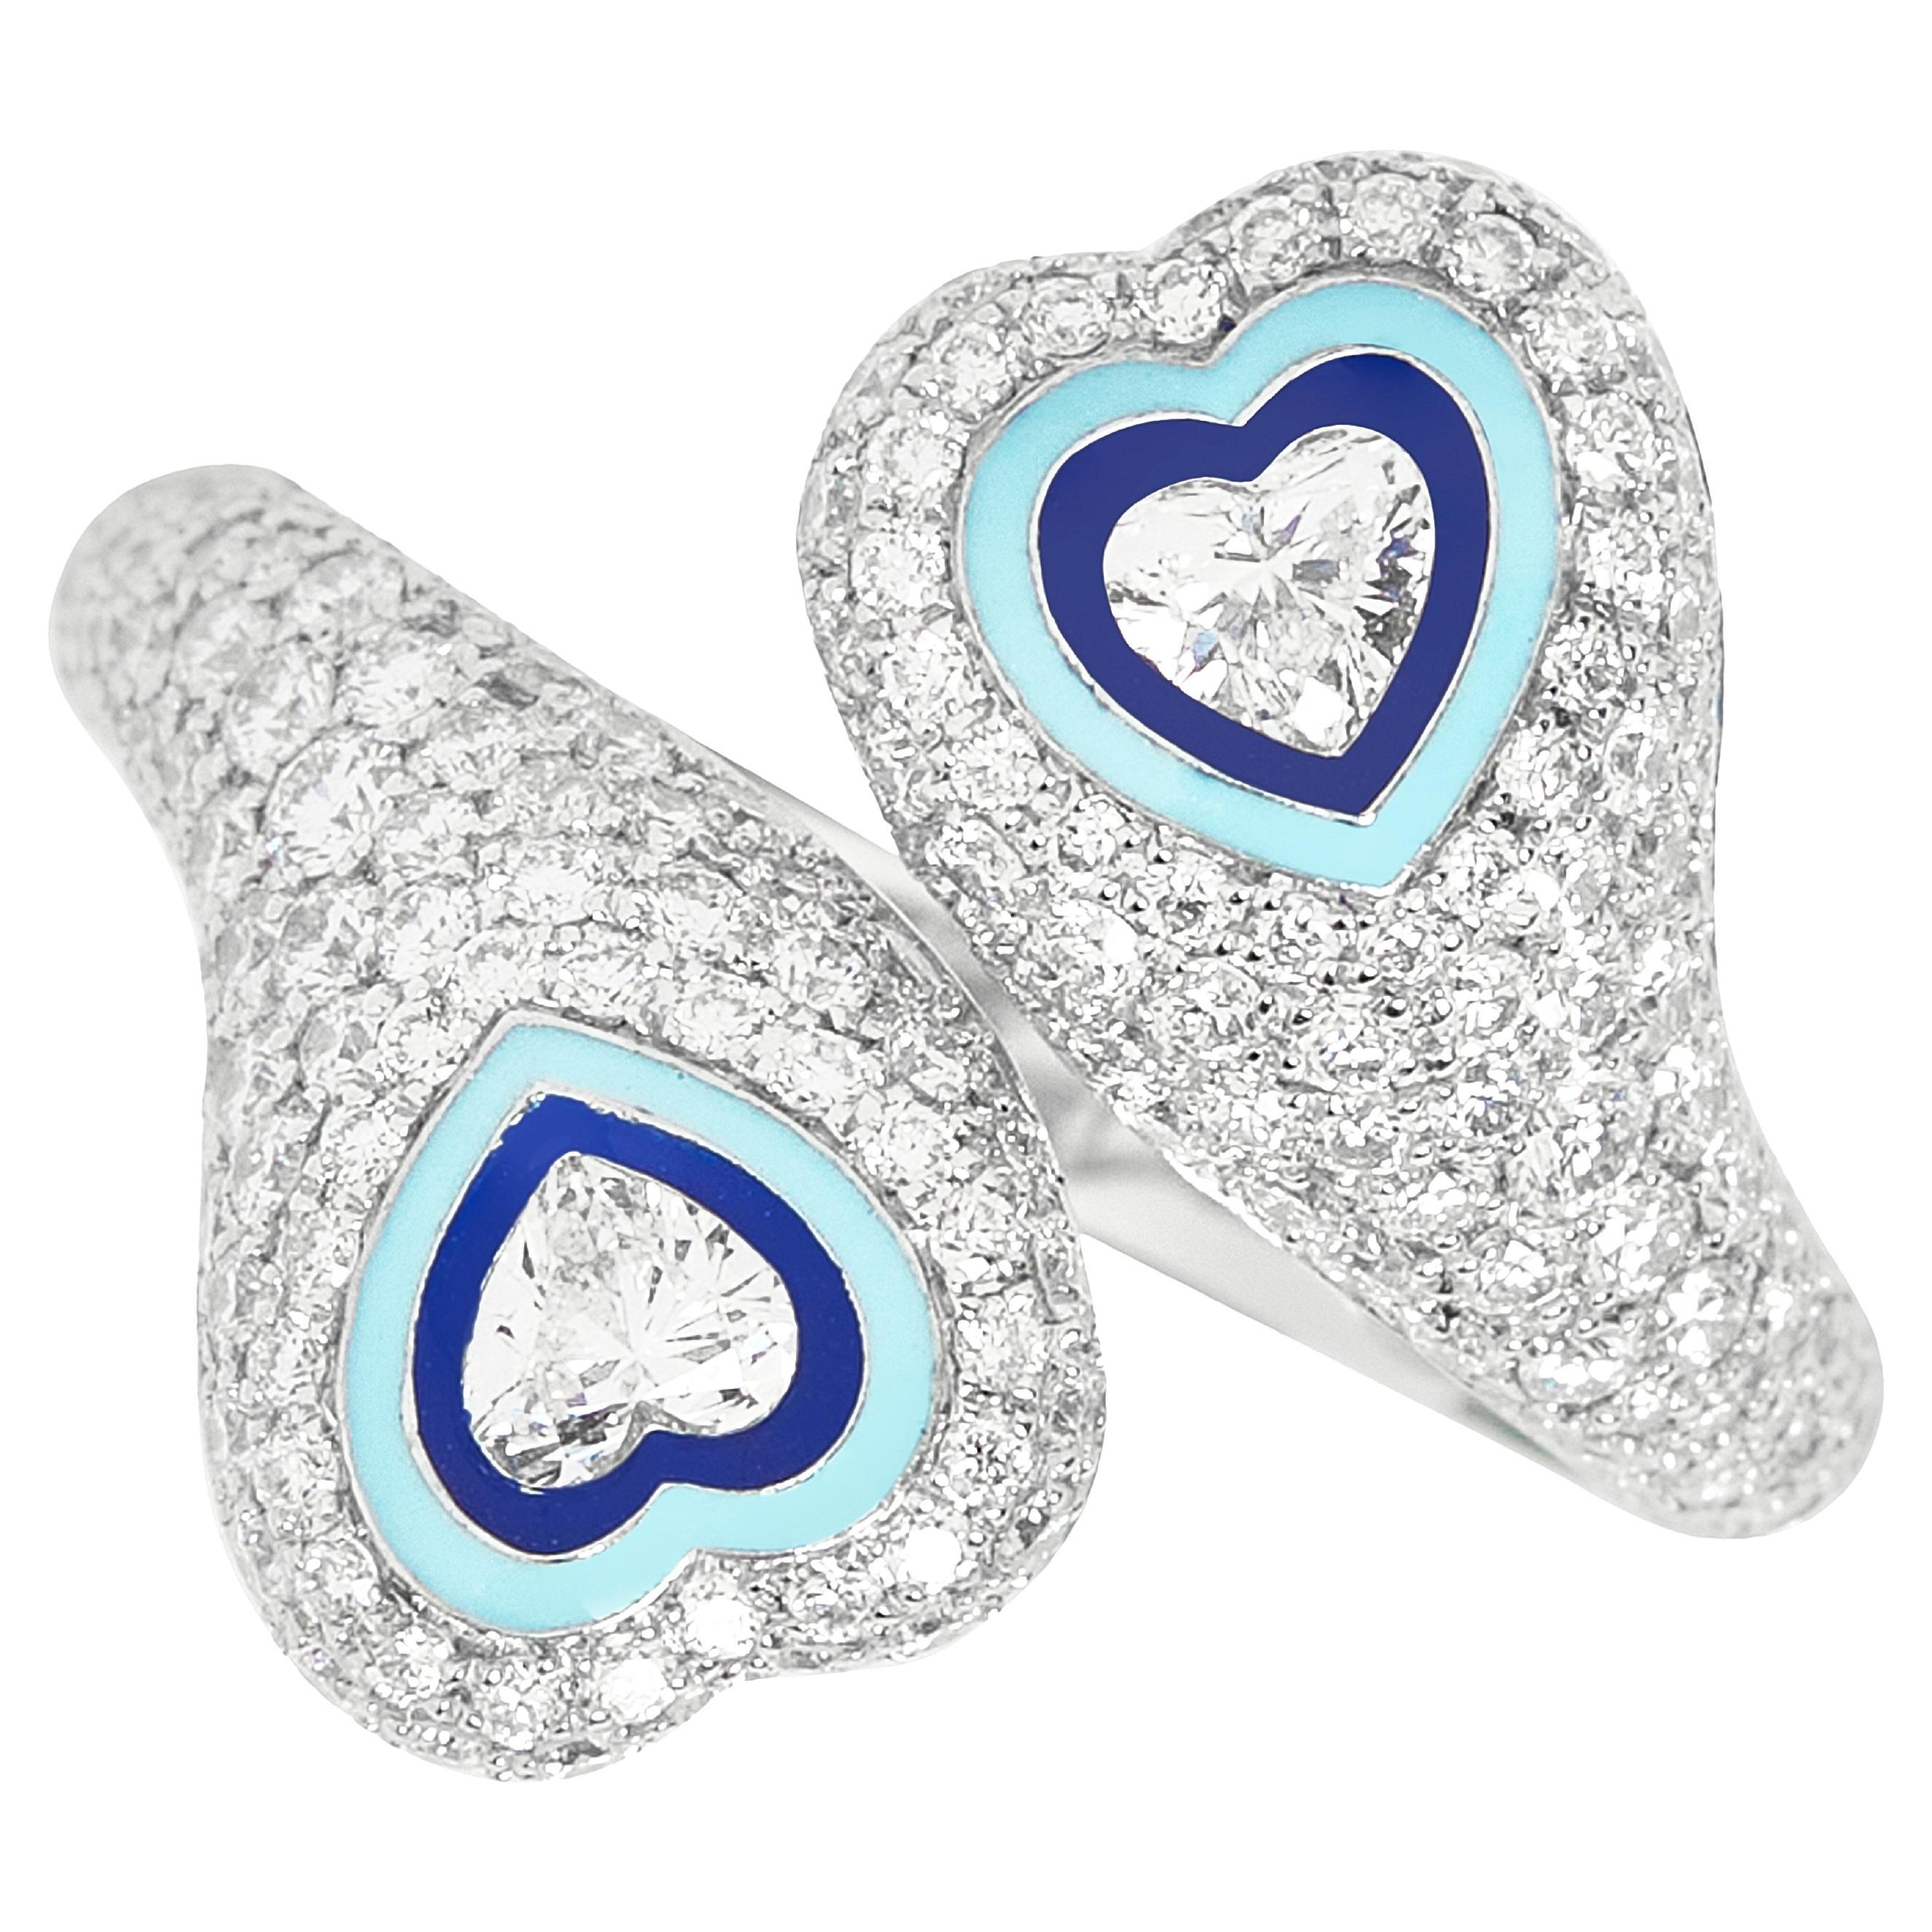 For Sale:  Kamyen, Gemini Heart Enamel Ring, Cocktail Ring